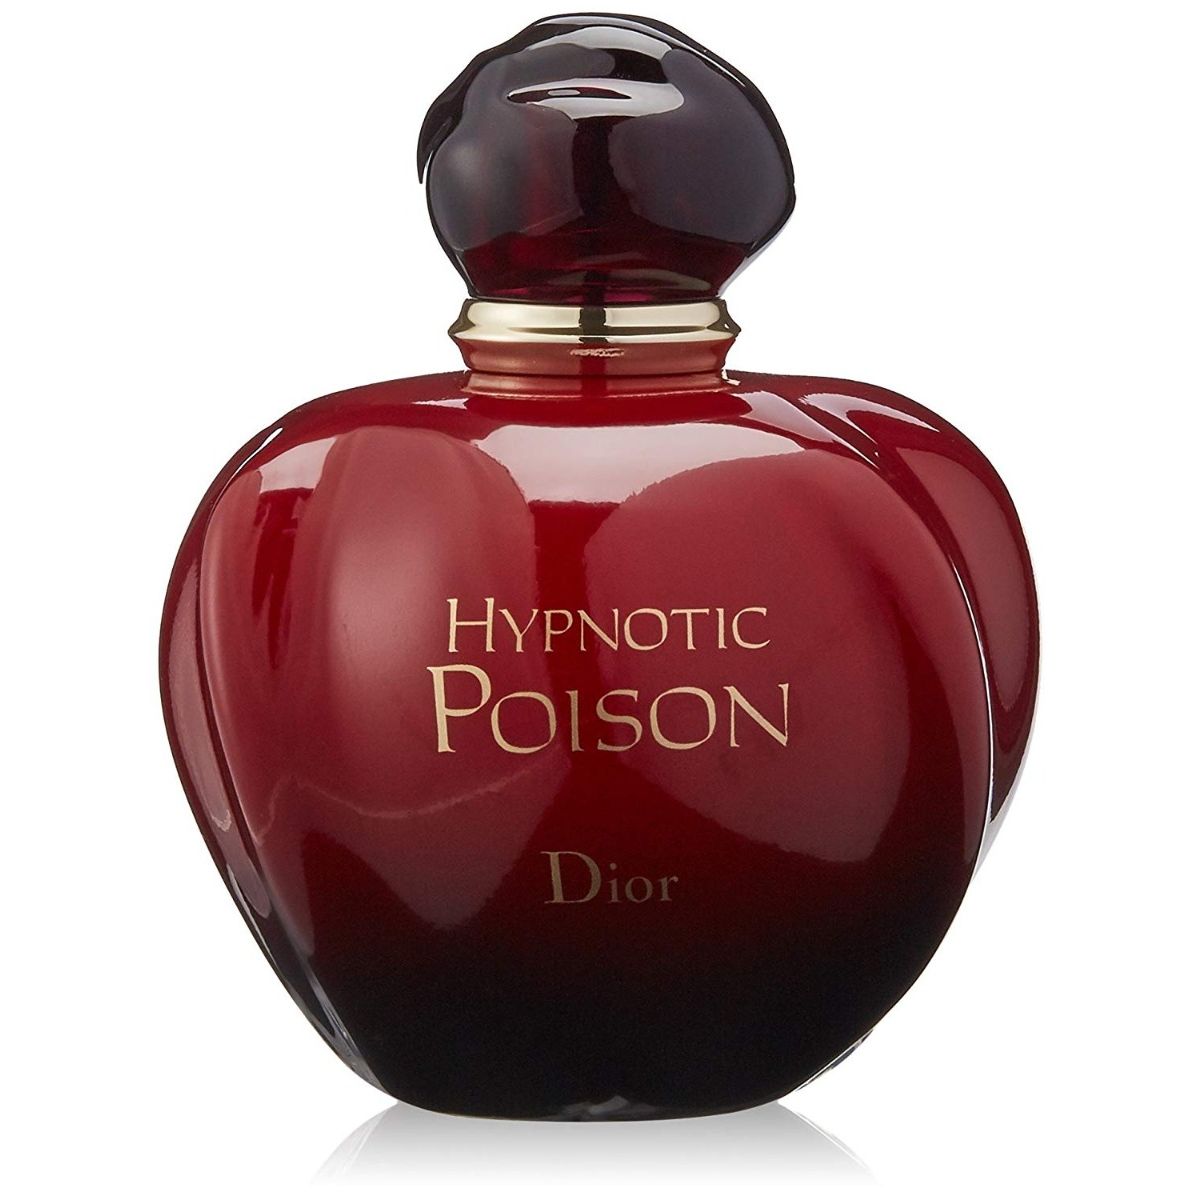 dior poison hypnotic price